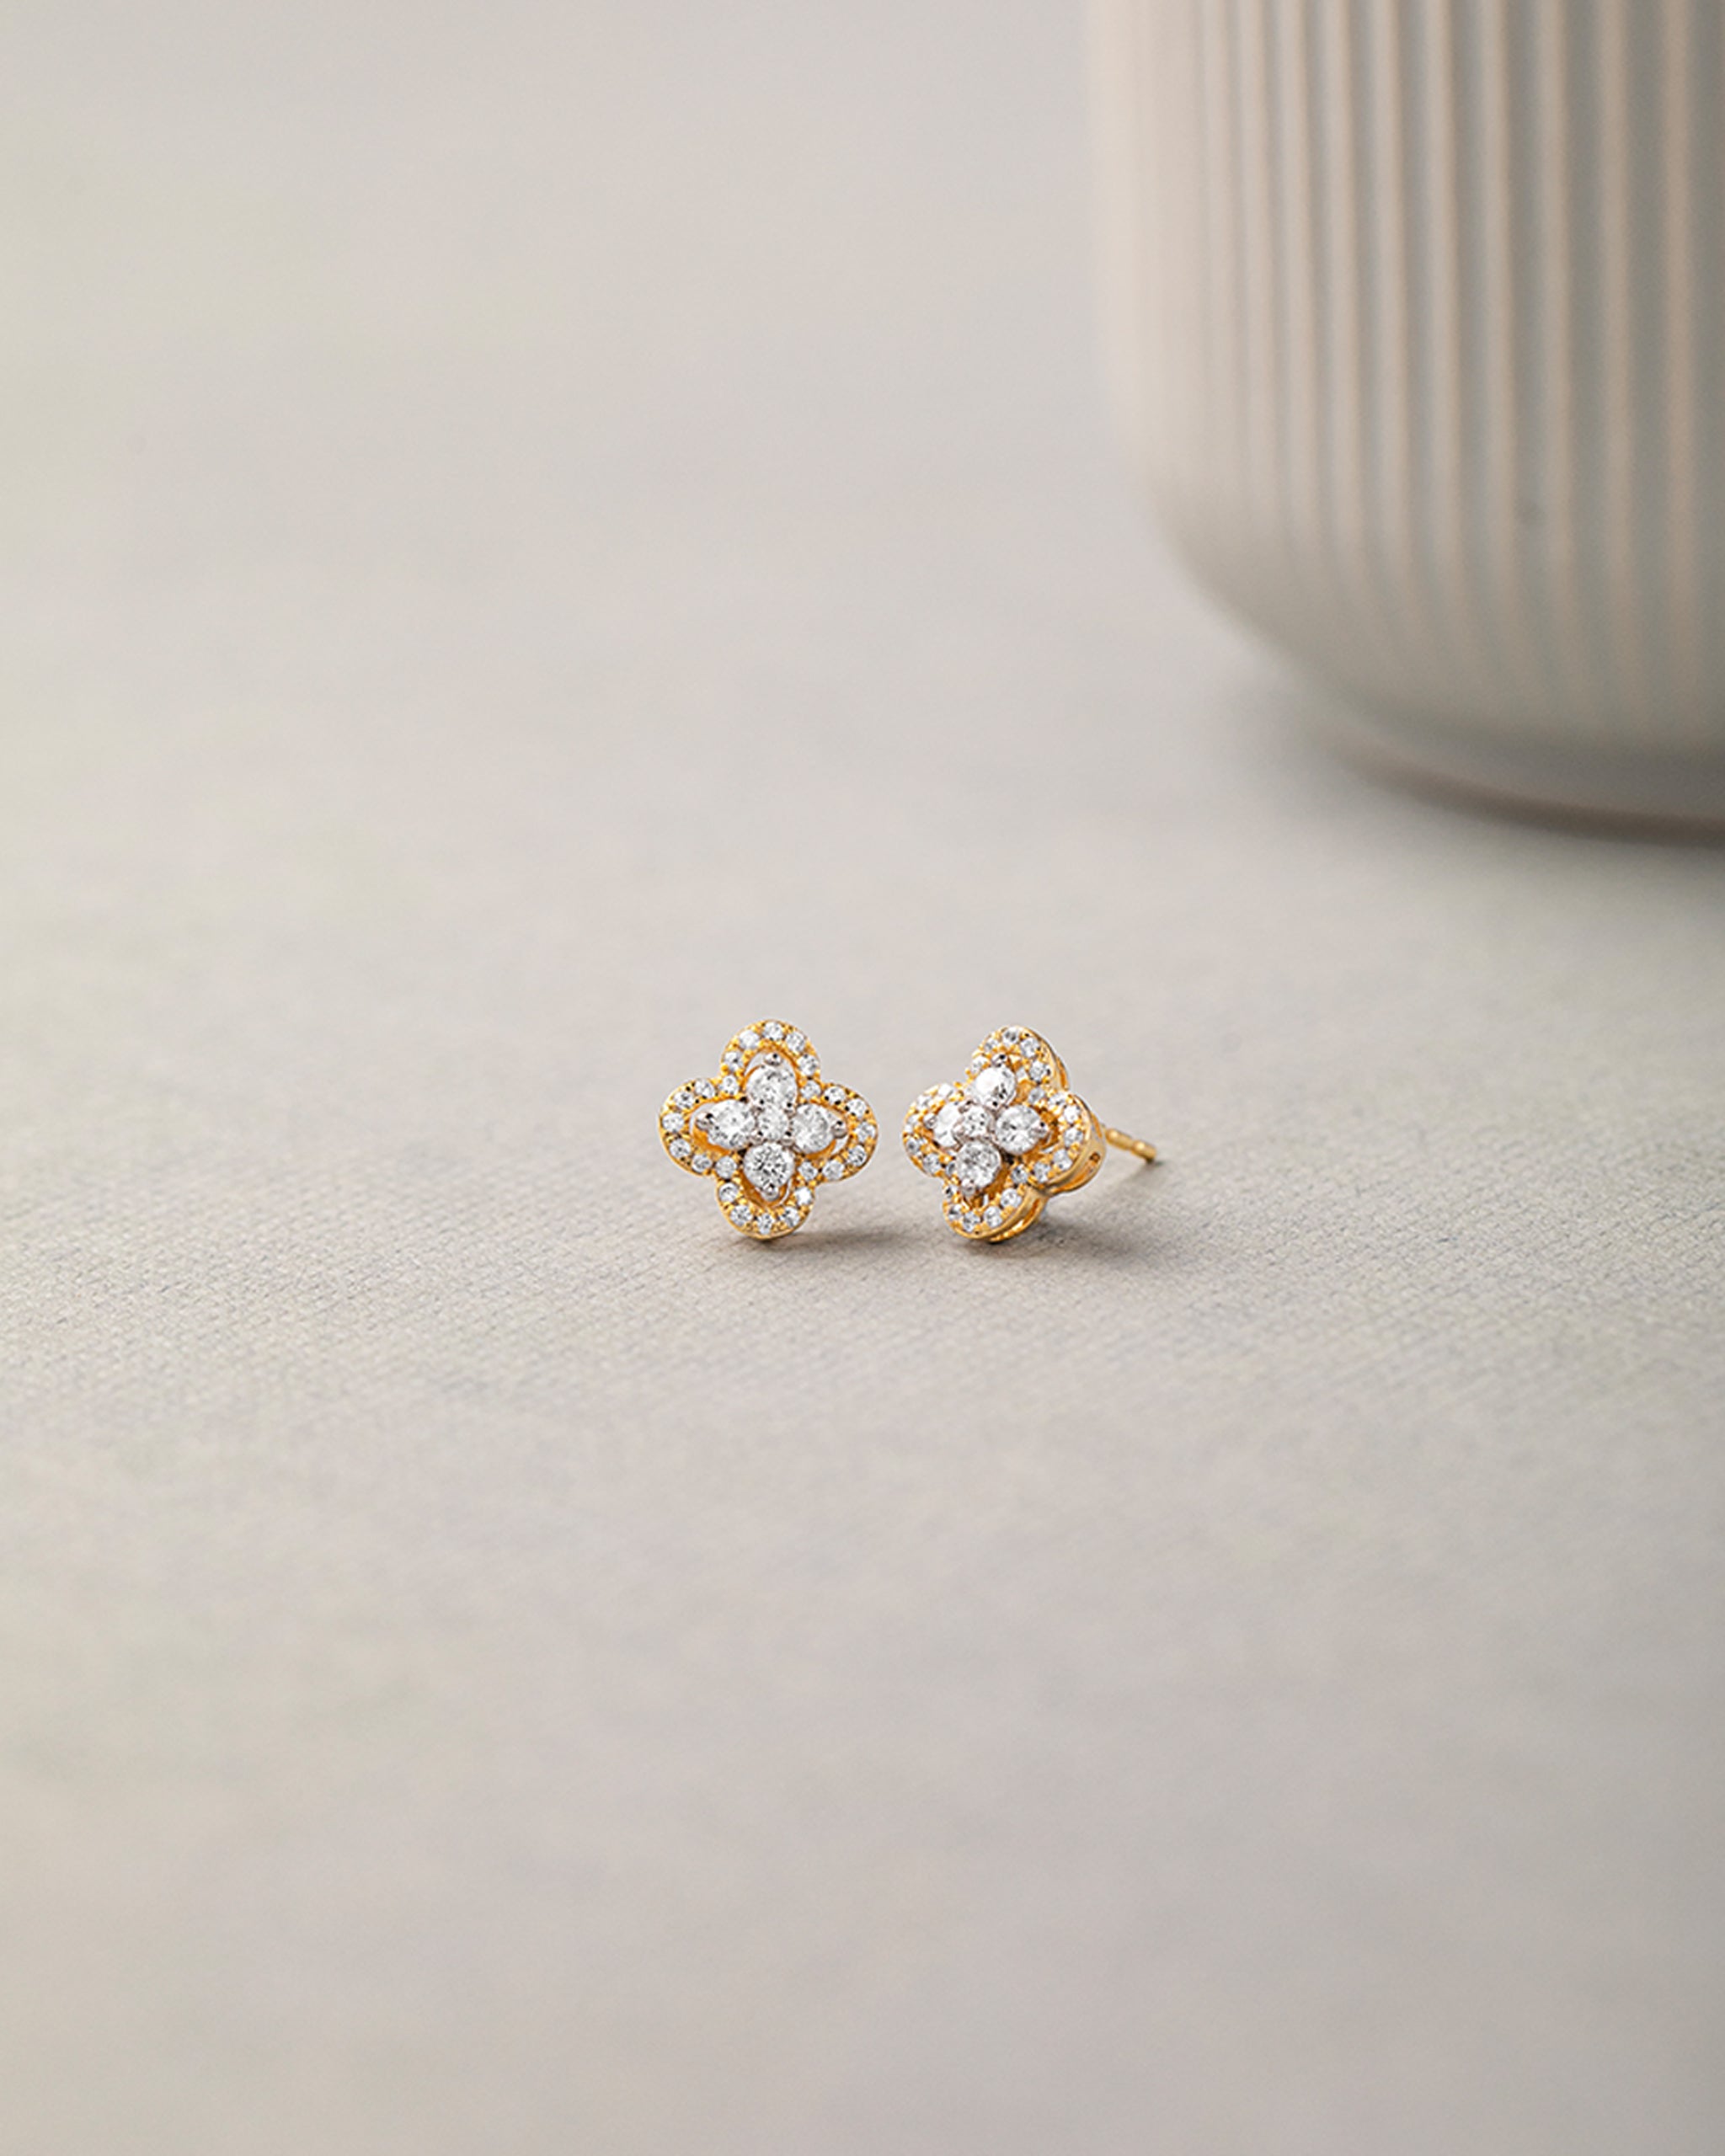 Elegant Clover Diamond Earrings